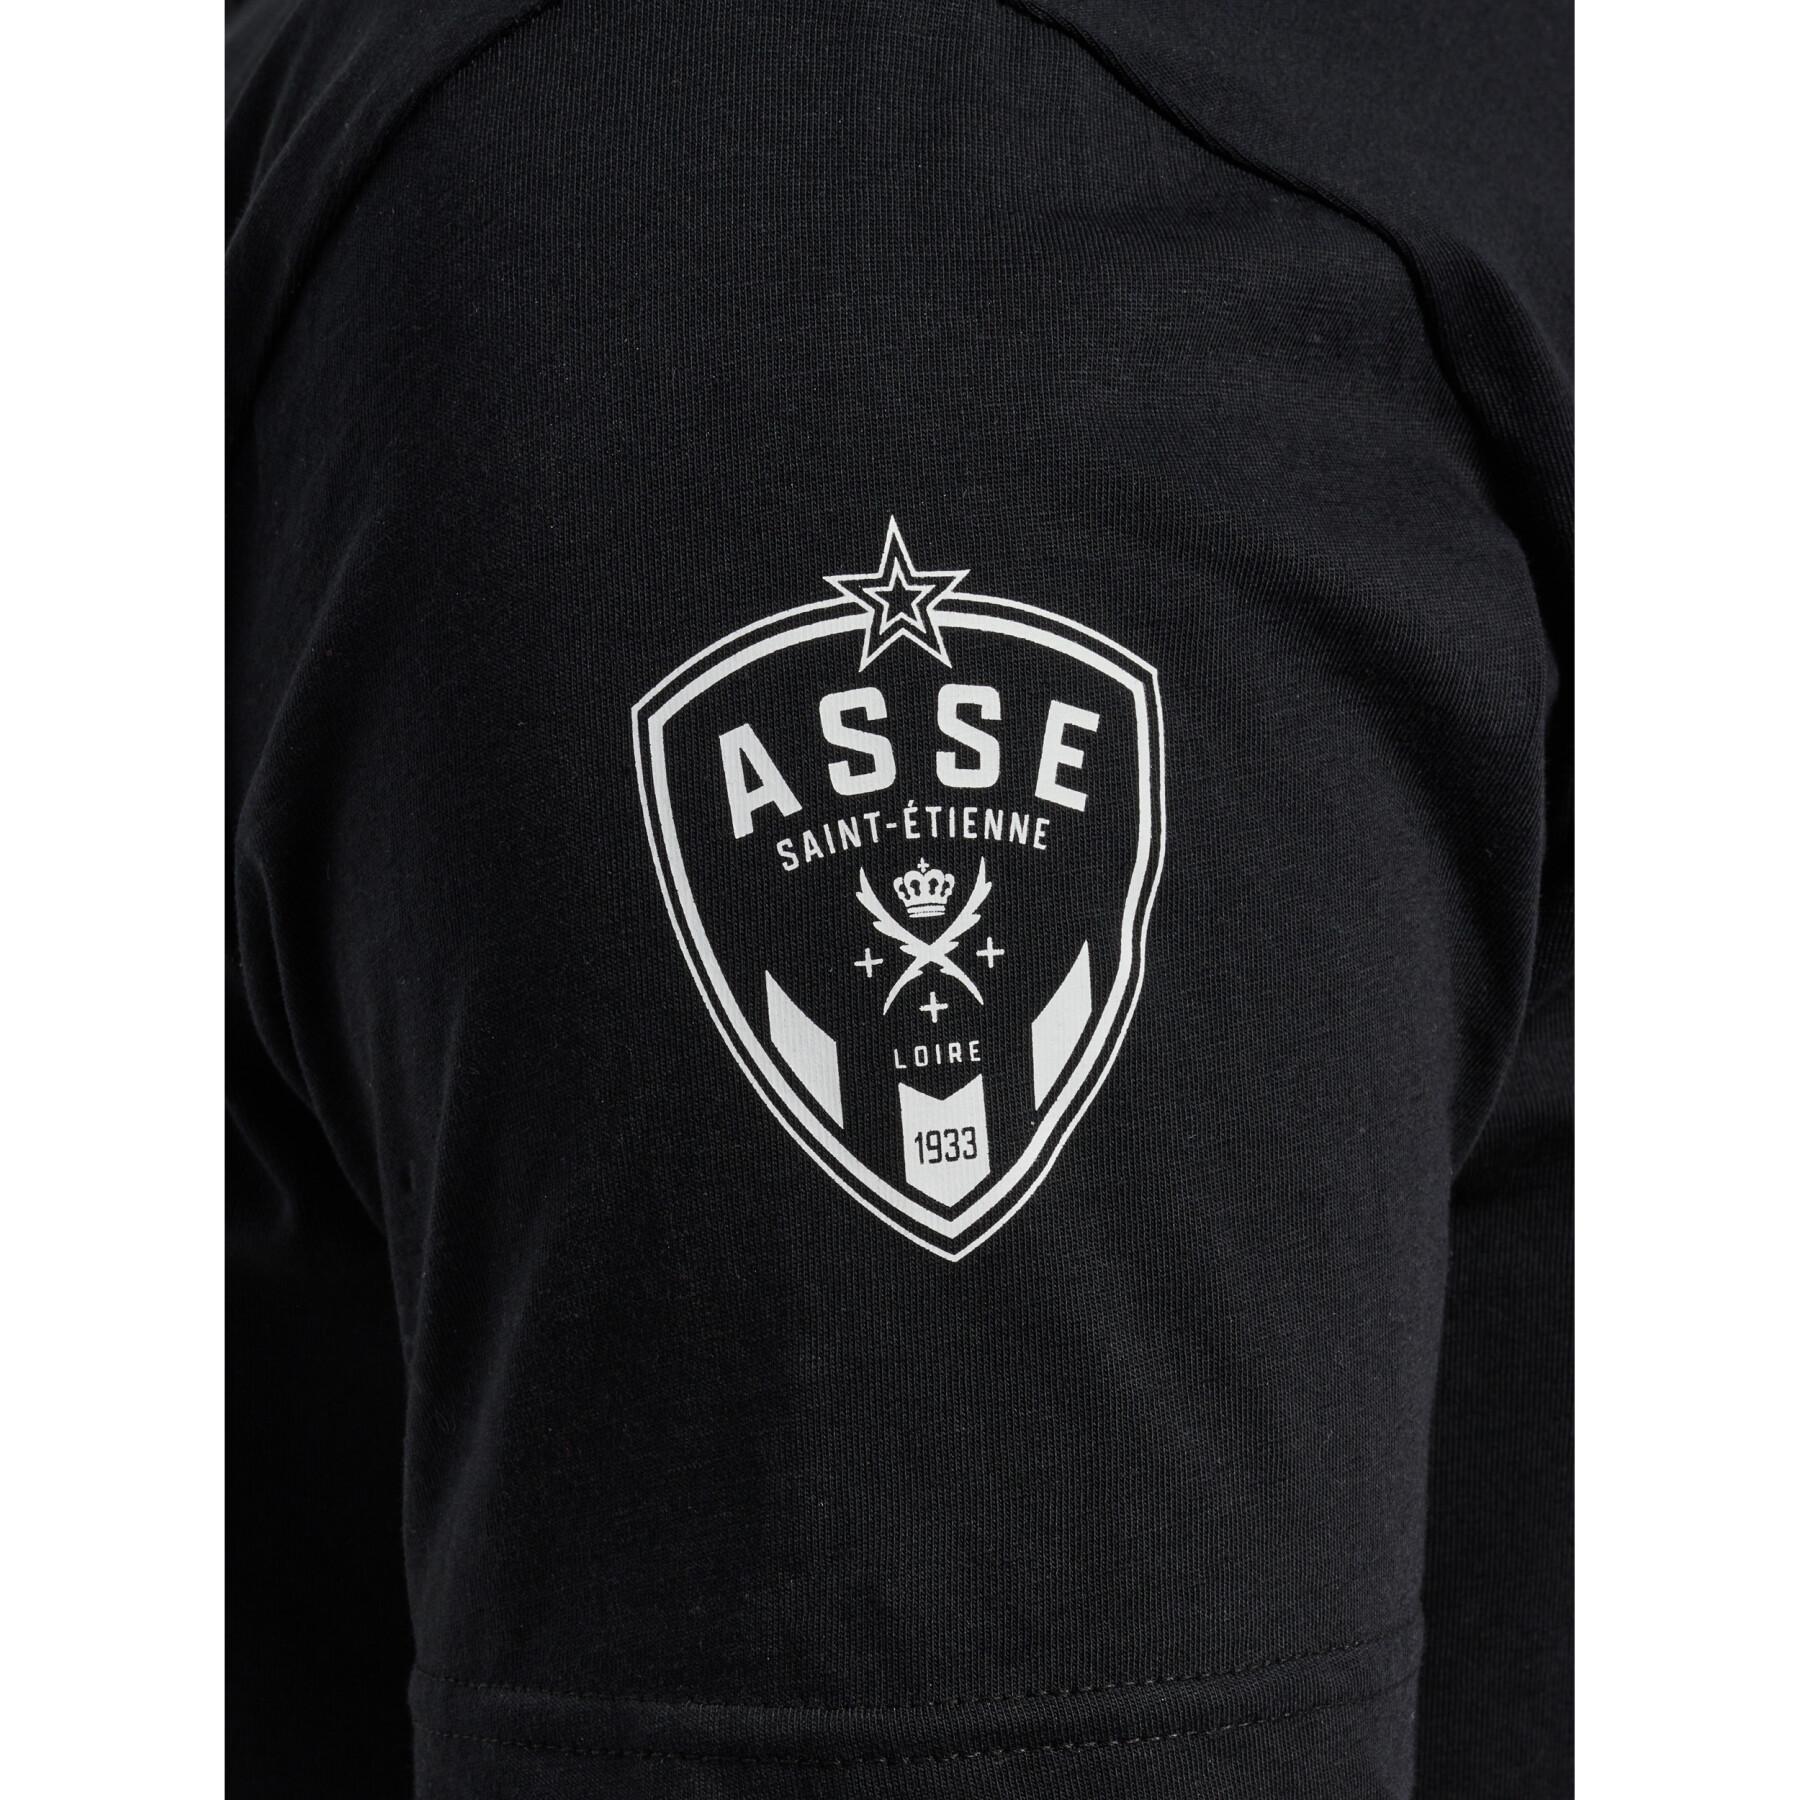 T-shirt ASSE Fan